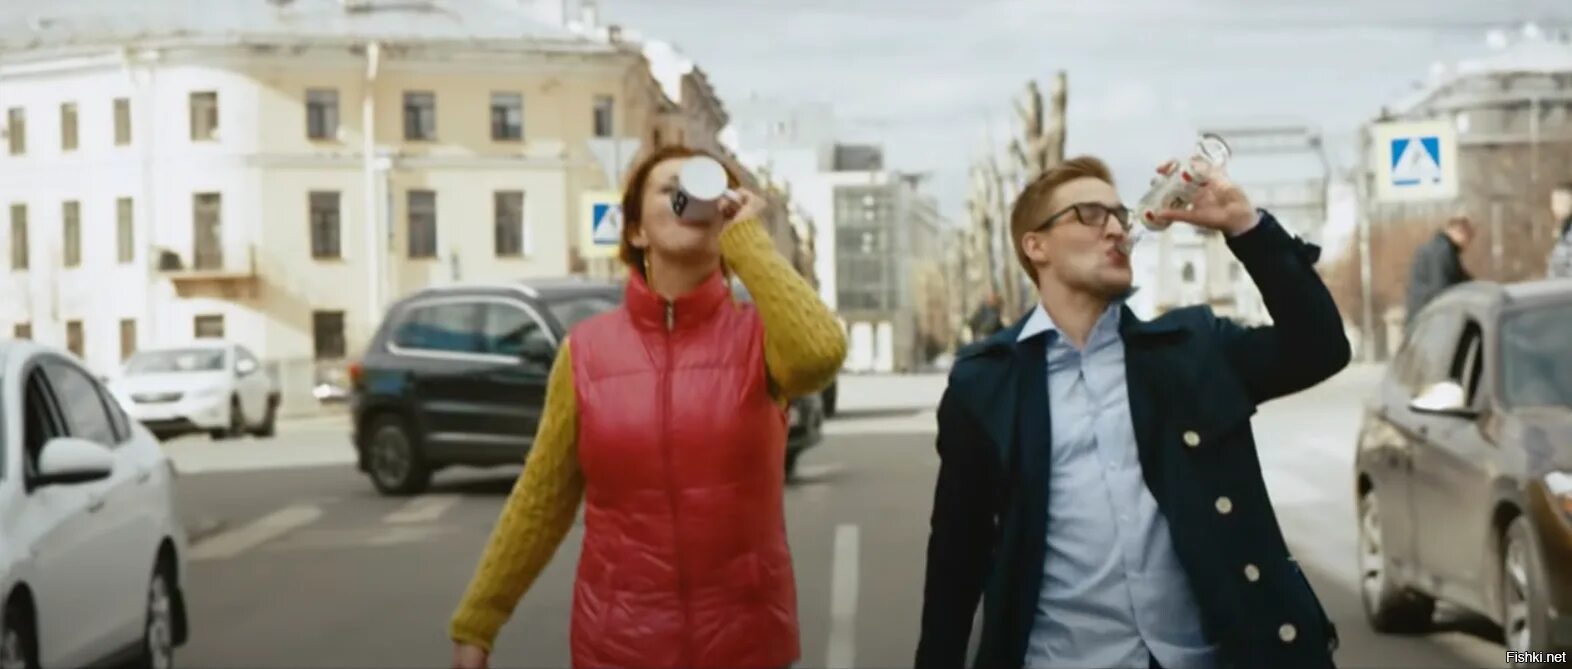 Шнур клип пить. В Питере пить. В Питере пить Ленинград. В Питере пить фото. Экскурсовод из клипа в Питере пить.